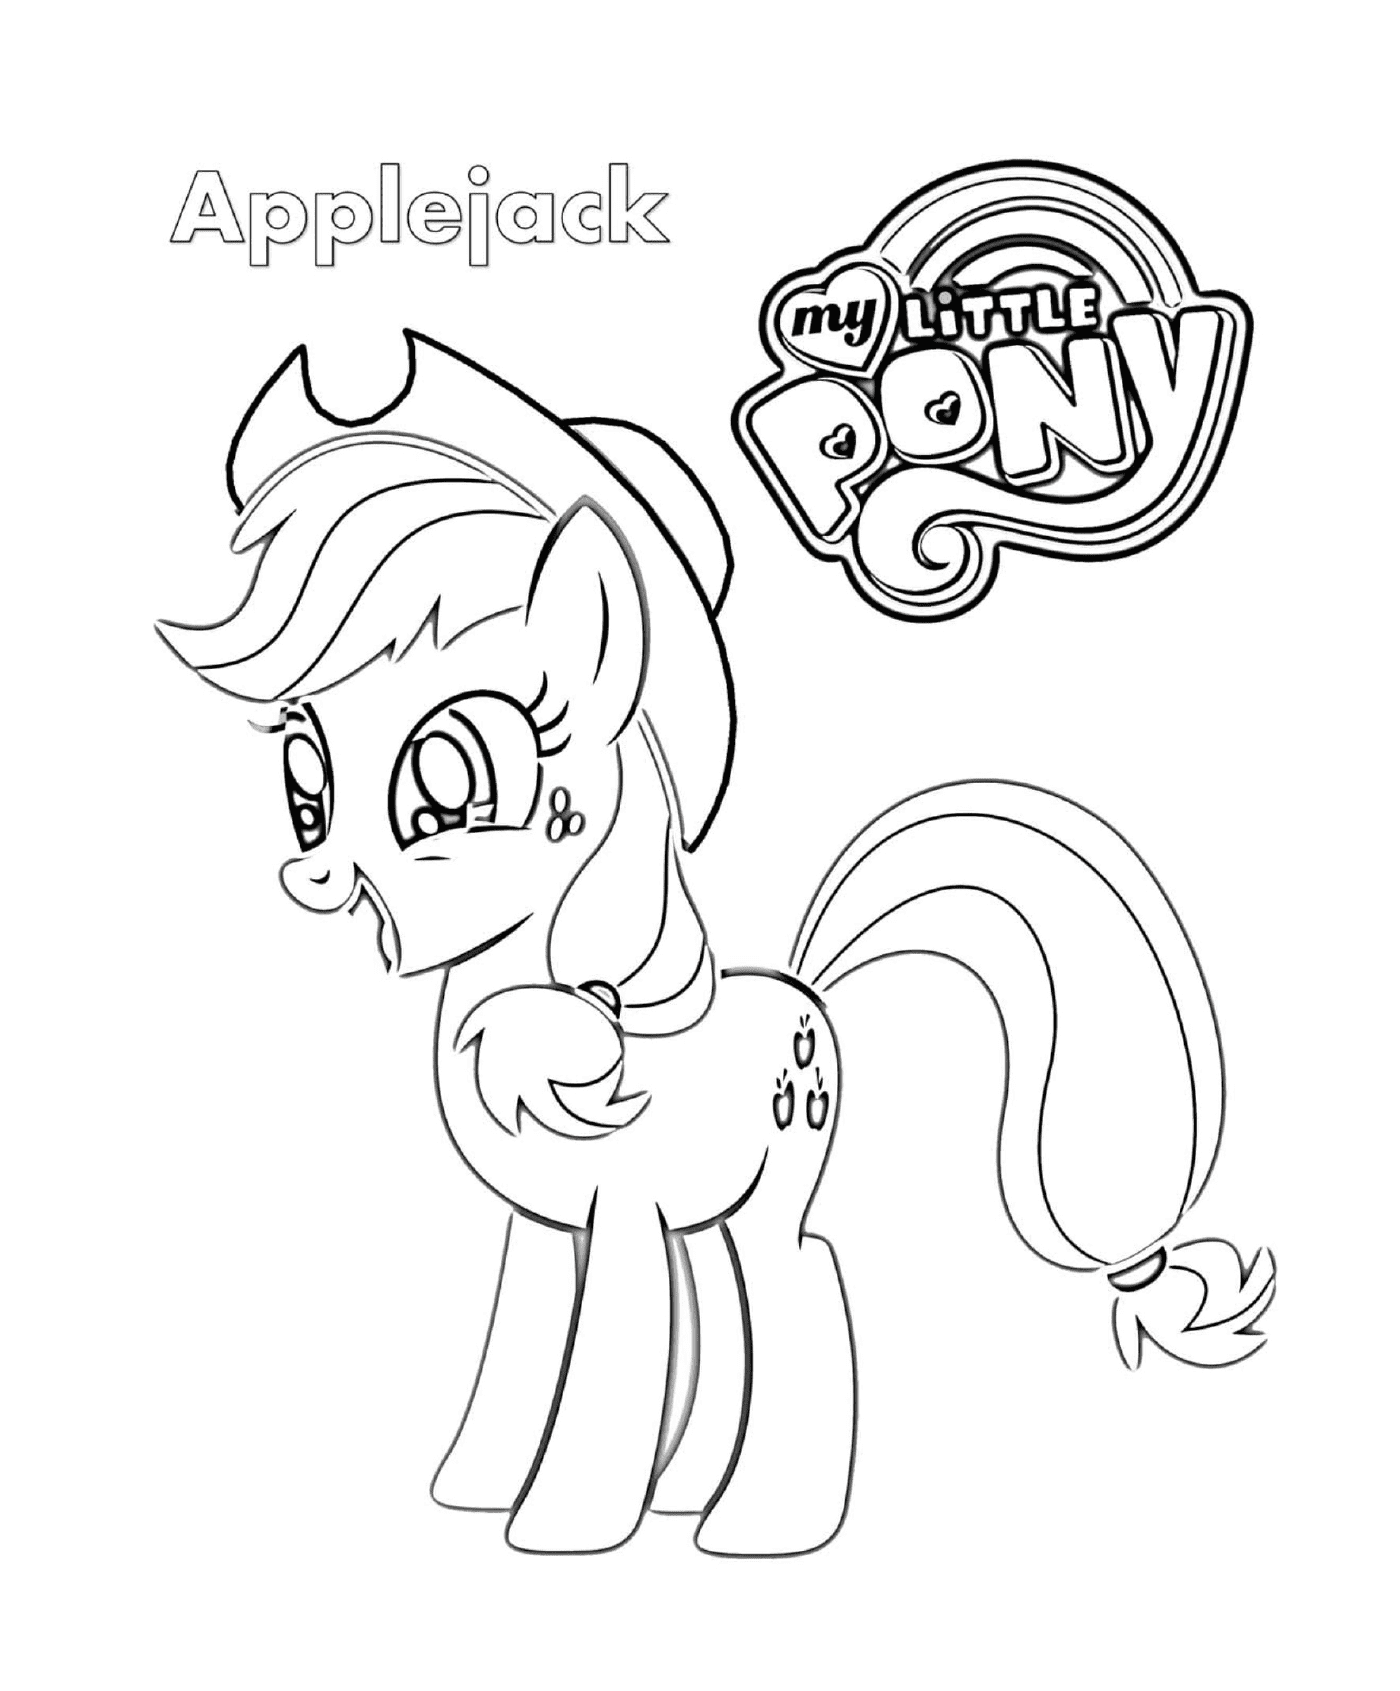   Applejack, un poney tout mignon 